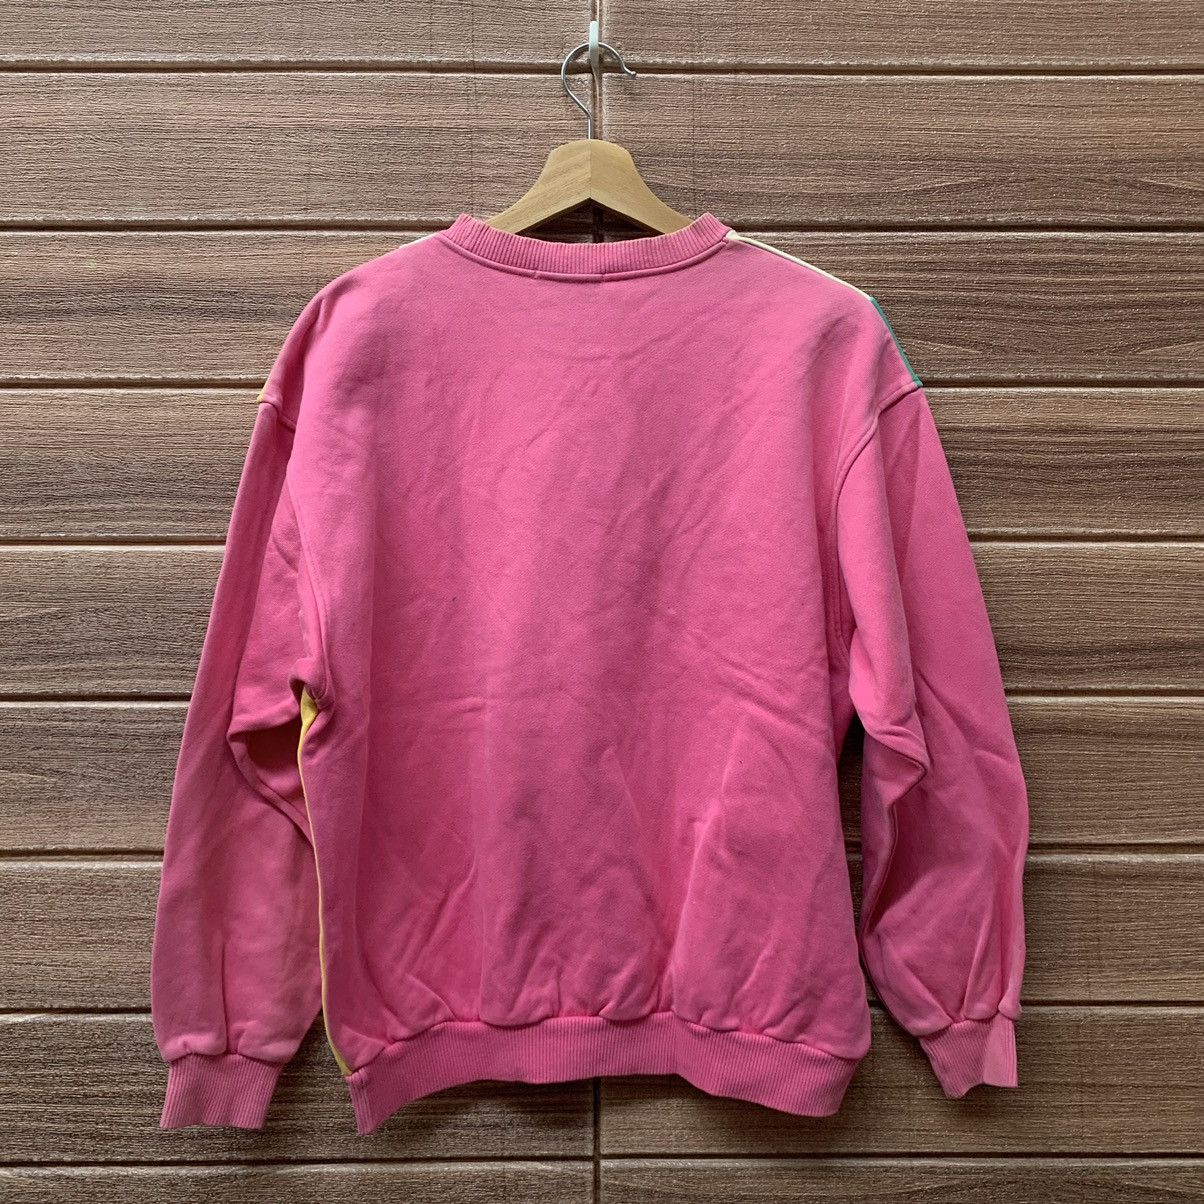 Vintage (A9) Sweatshirt Courreges Pink Colourful Stripe Size US M / EU 48-50 / 2 - 7 Preview